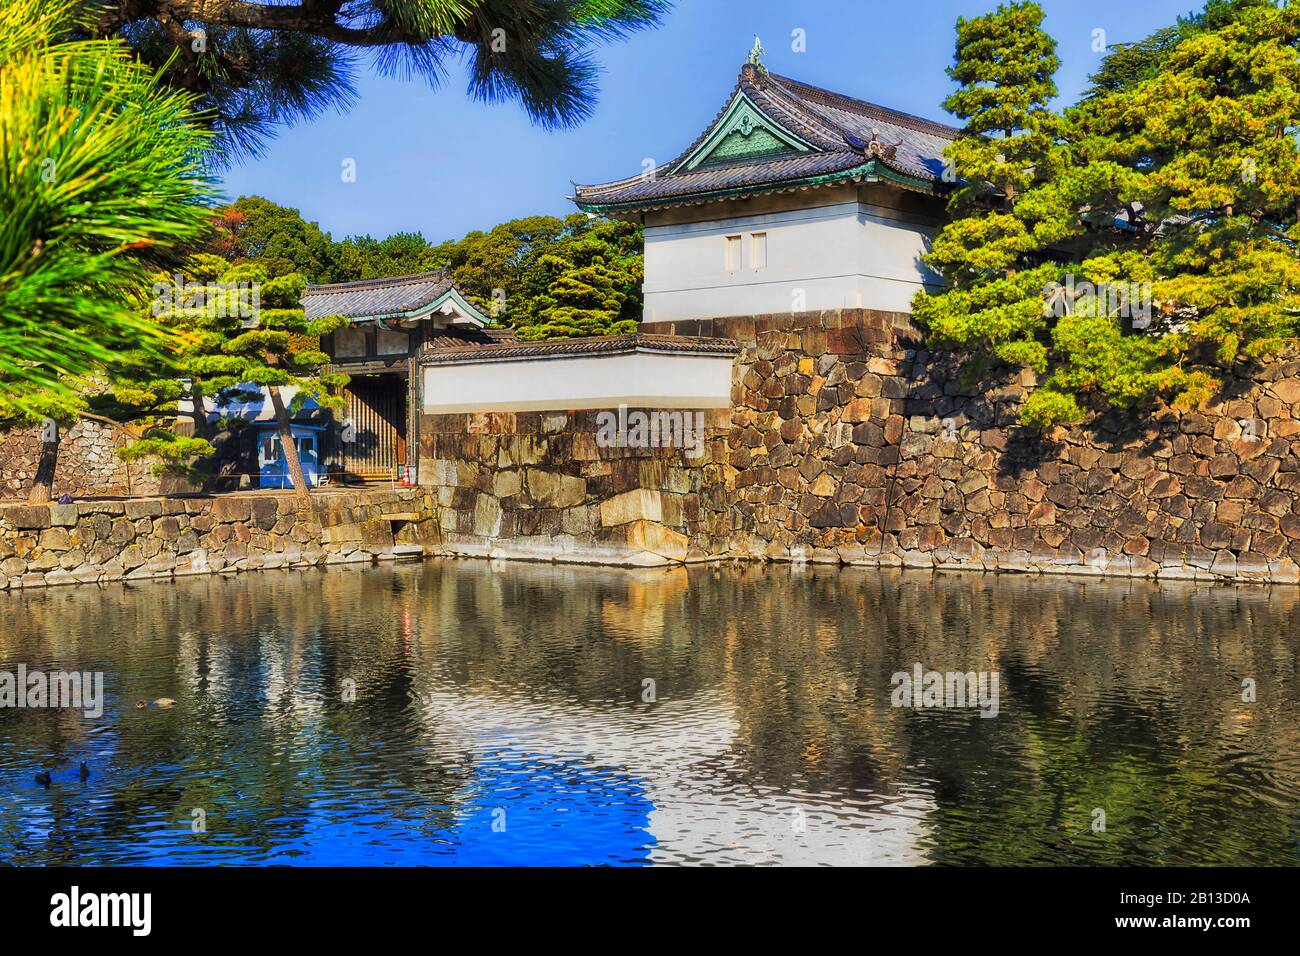 Des tours historiques blanches sur des murs en pierre autour du palais impérial dans la ville de Tokyo, entourées d'une foule d'eau par une journée ensoleillée. Banque D'Images